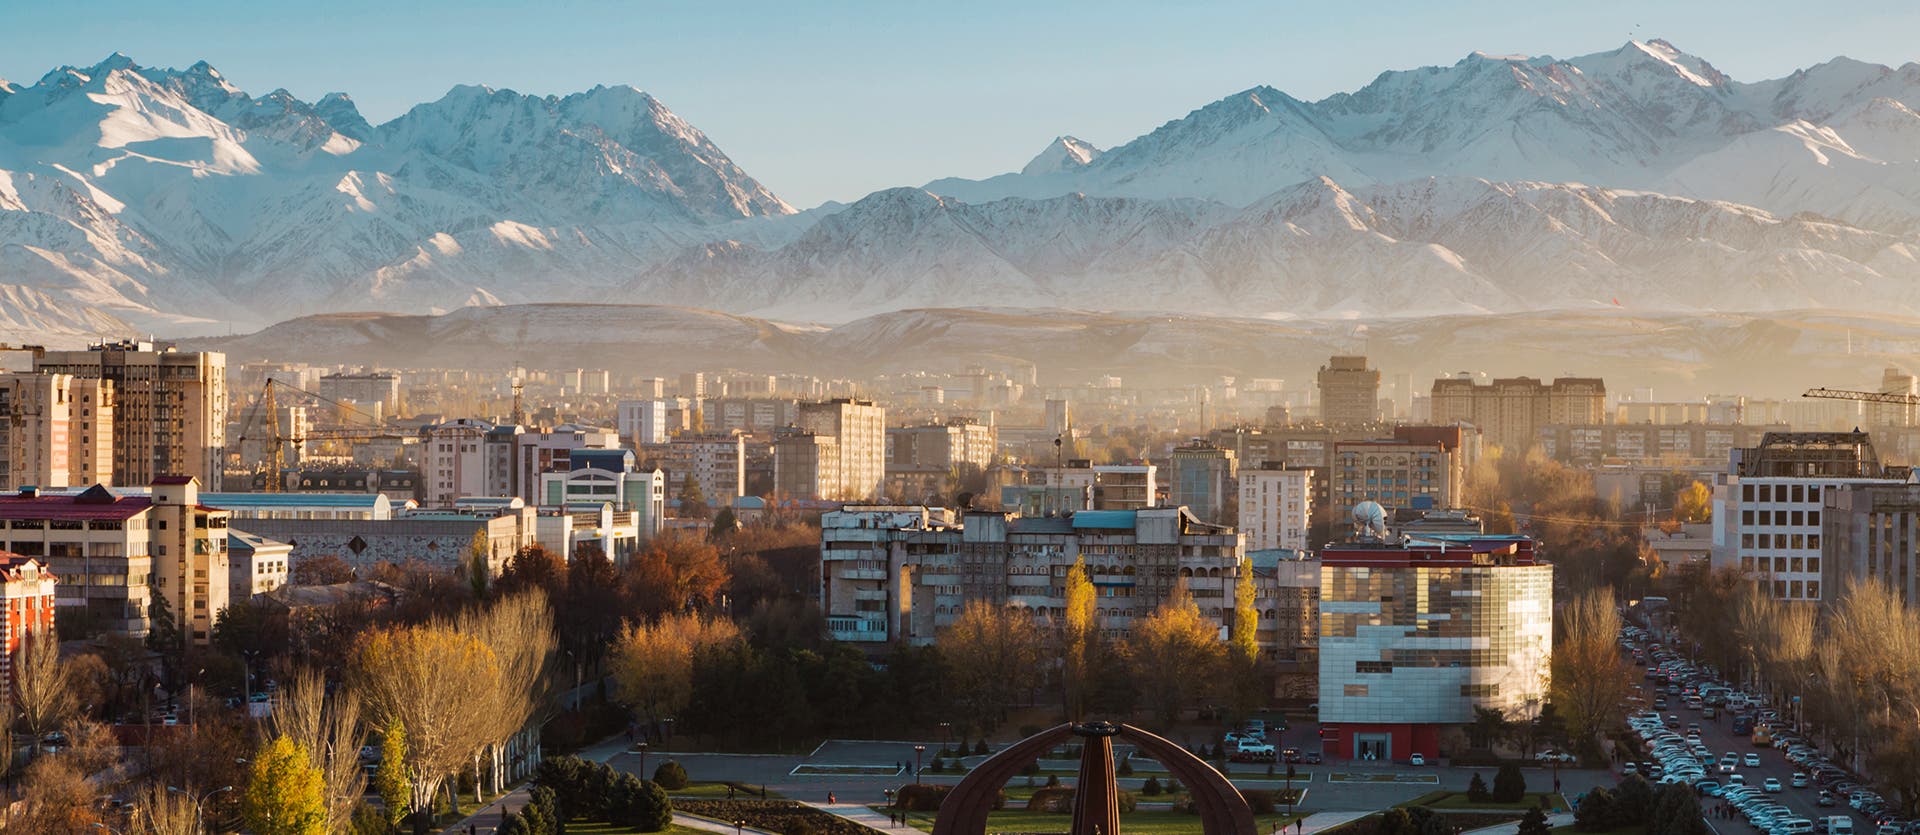 Qué ver en Kirguistán Bishkek